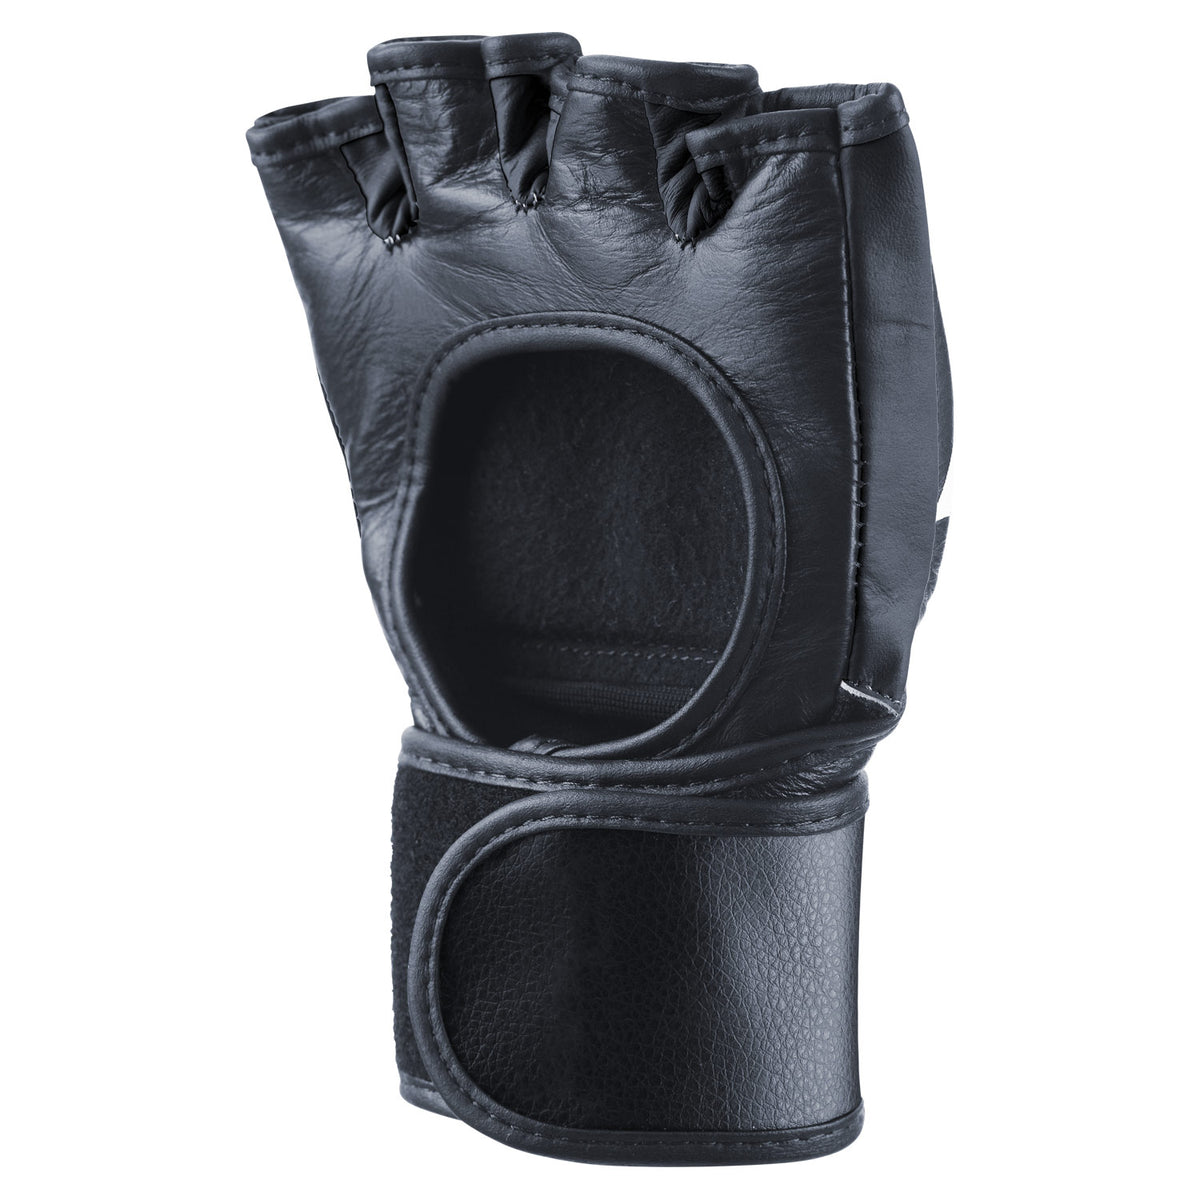 Phantom MMA Fight Handschuhe Blackout für deinen Kampfsport - Rechter Handschuh mit offener Handfläche für optimale Eigenschaften beim Grappling